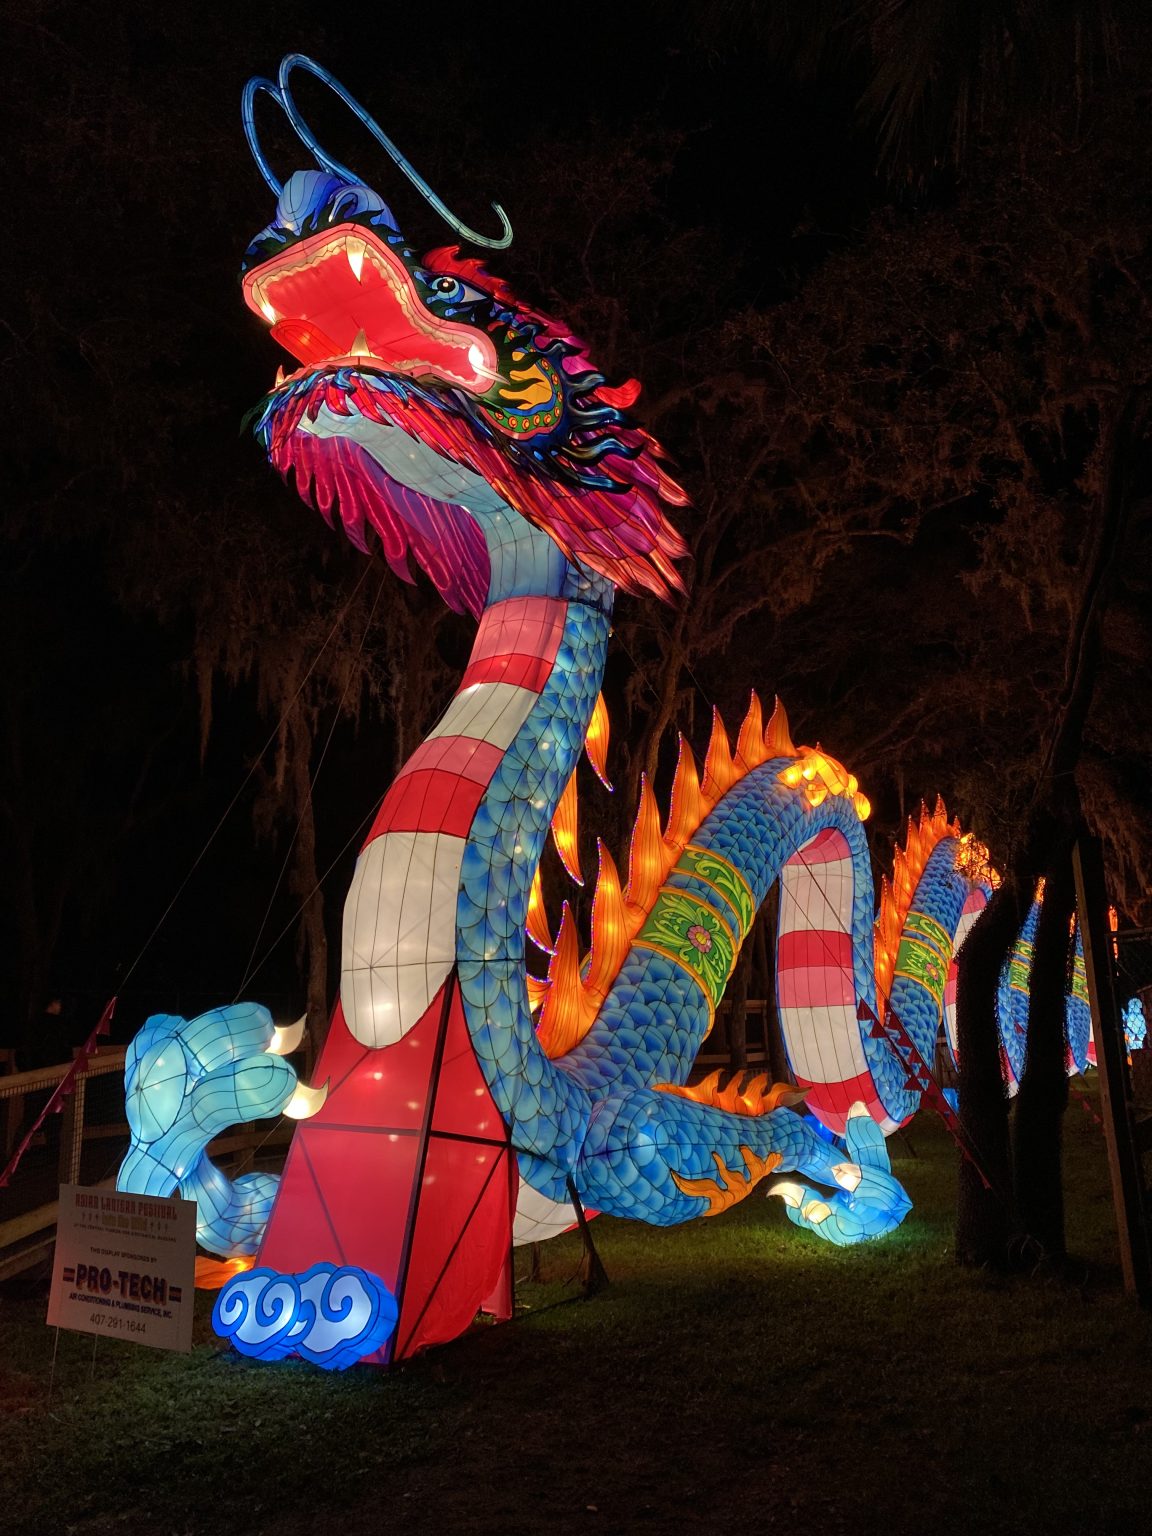 Central Florida Zoo & Botanical Gardens Asian Lantern Festival Into